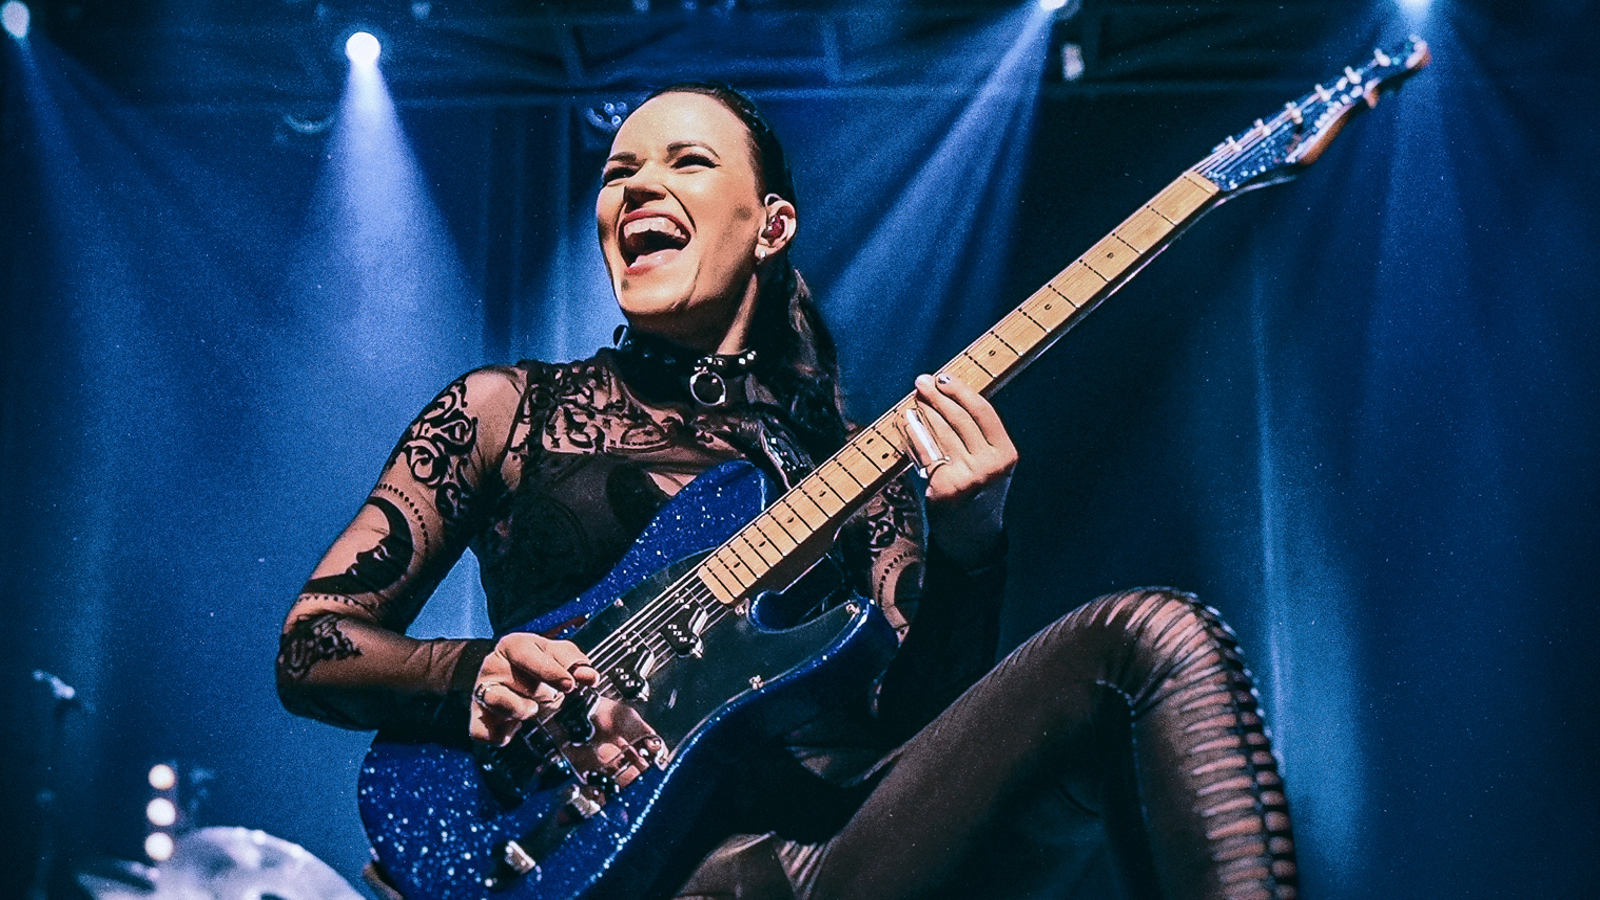 Kuvassa on Erja Lyytinen soittamassa kitaraa ja kuva on otettu yläviistoon.  Hänellä on musta läpikuultava puku, jossa on kukallista ja ruotomaista kuviointia. Kuvan sävy on tumman sininen sävy ja taustalla on kohdevaloja.